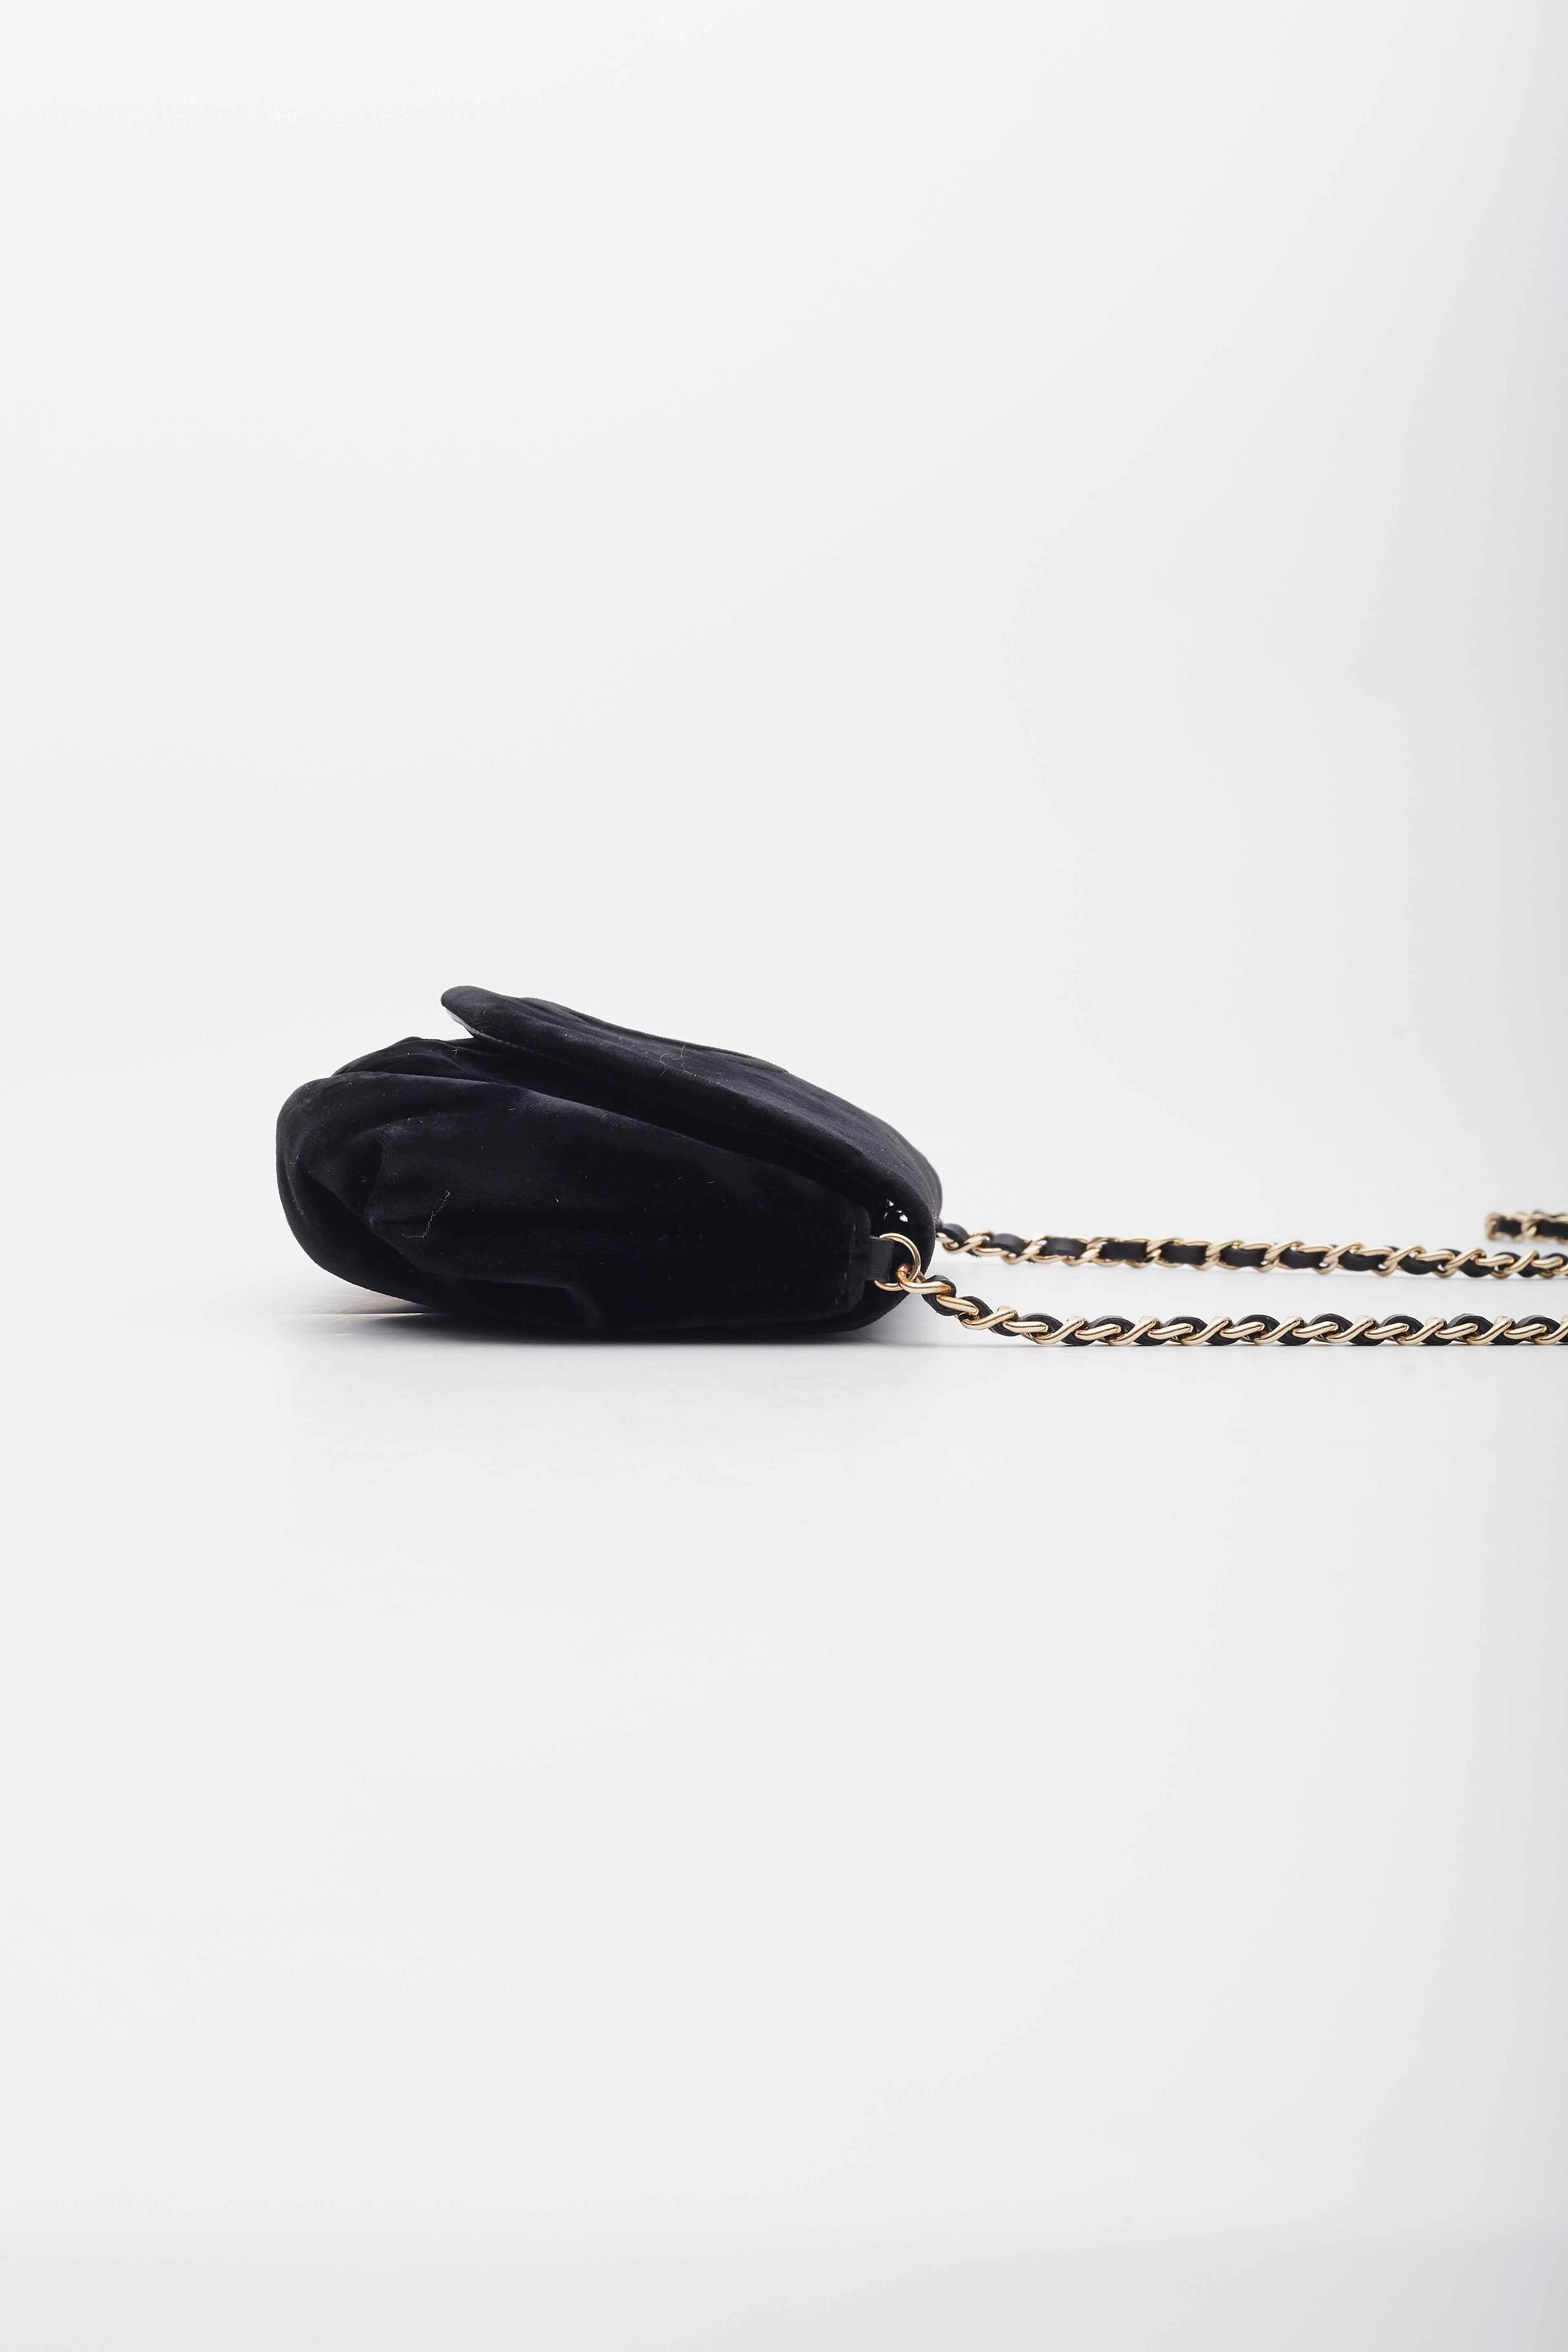 Chanel Velvet Half Moon Black Wallet on Chain Bag For Sale 1